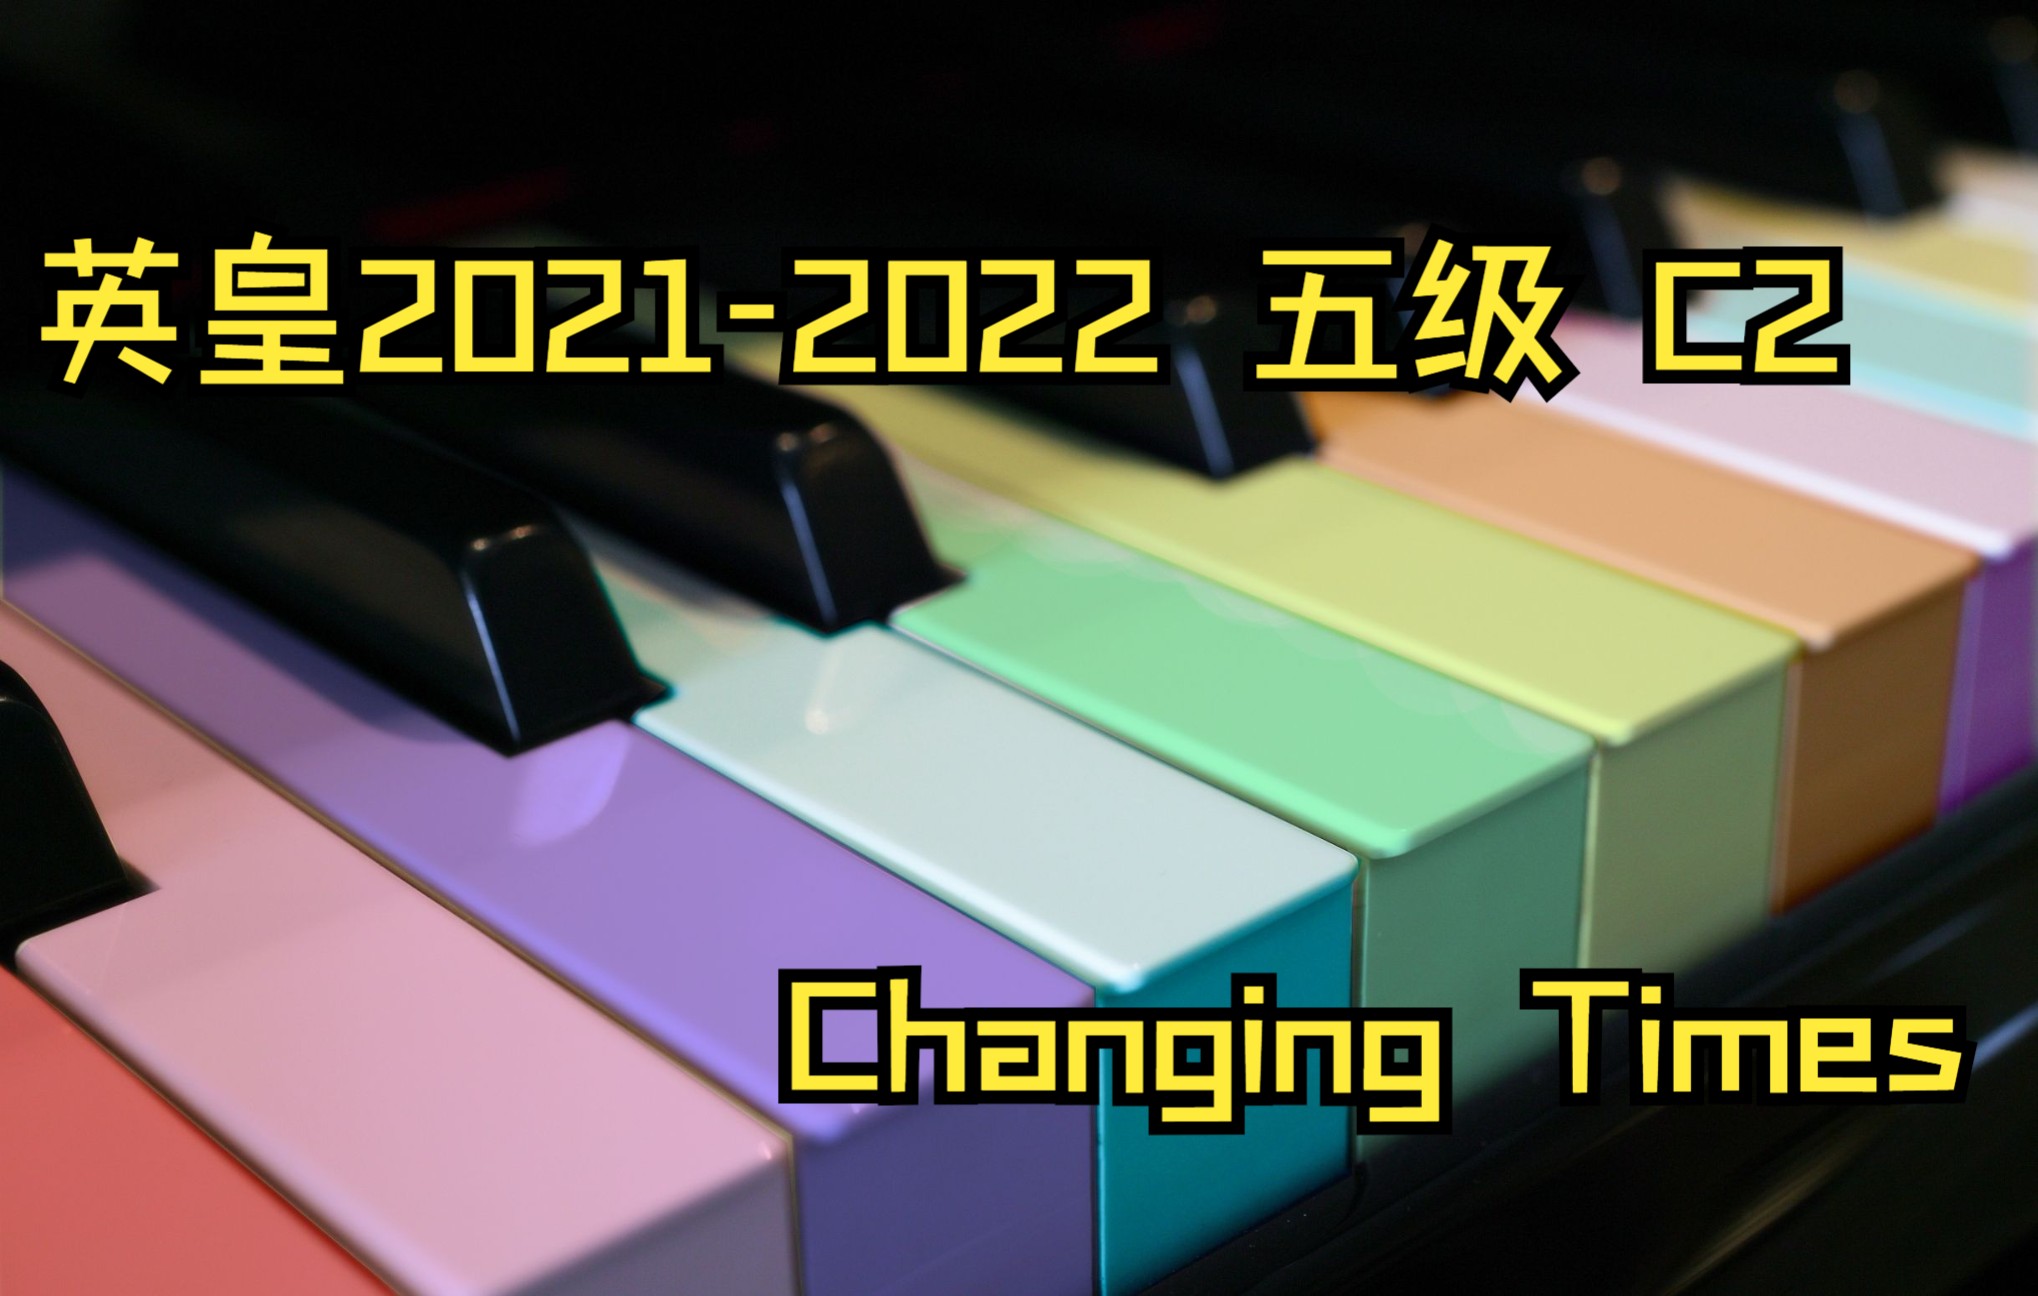 changing times钢琴曲图片